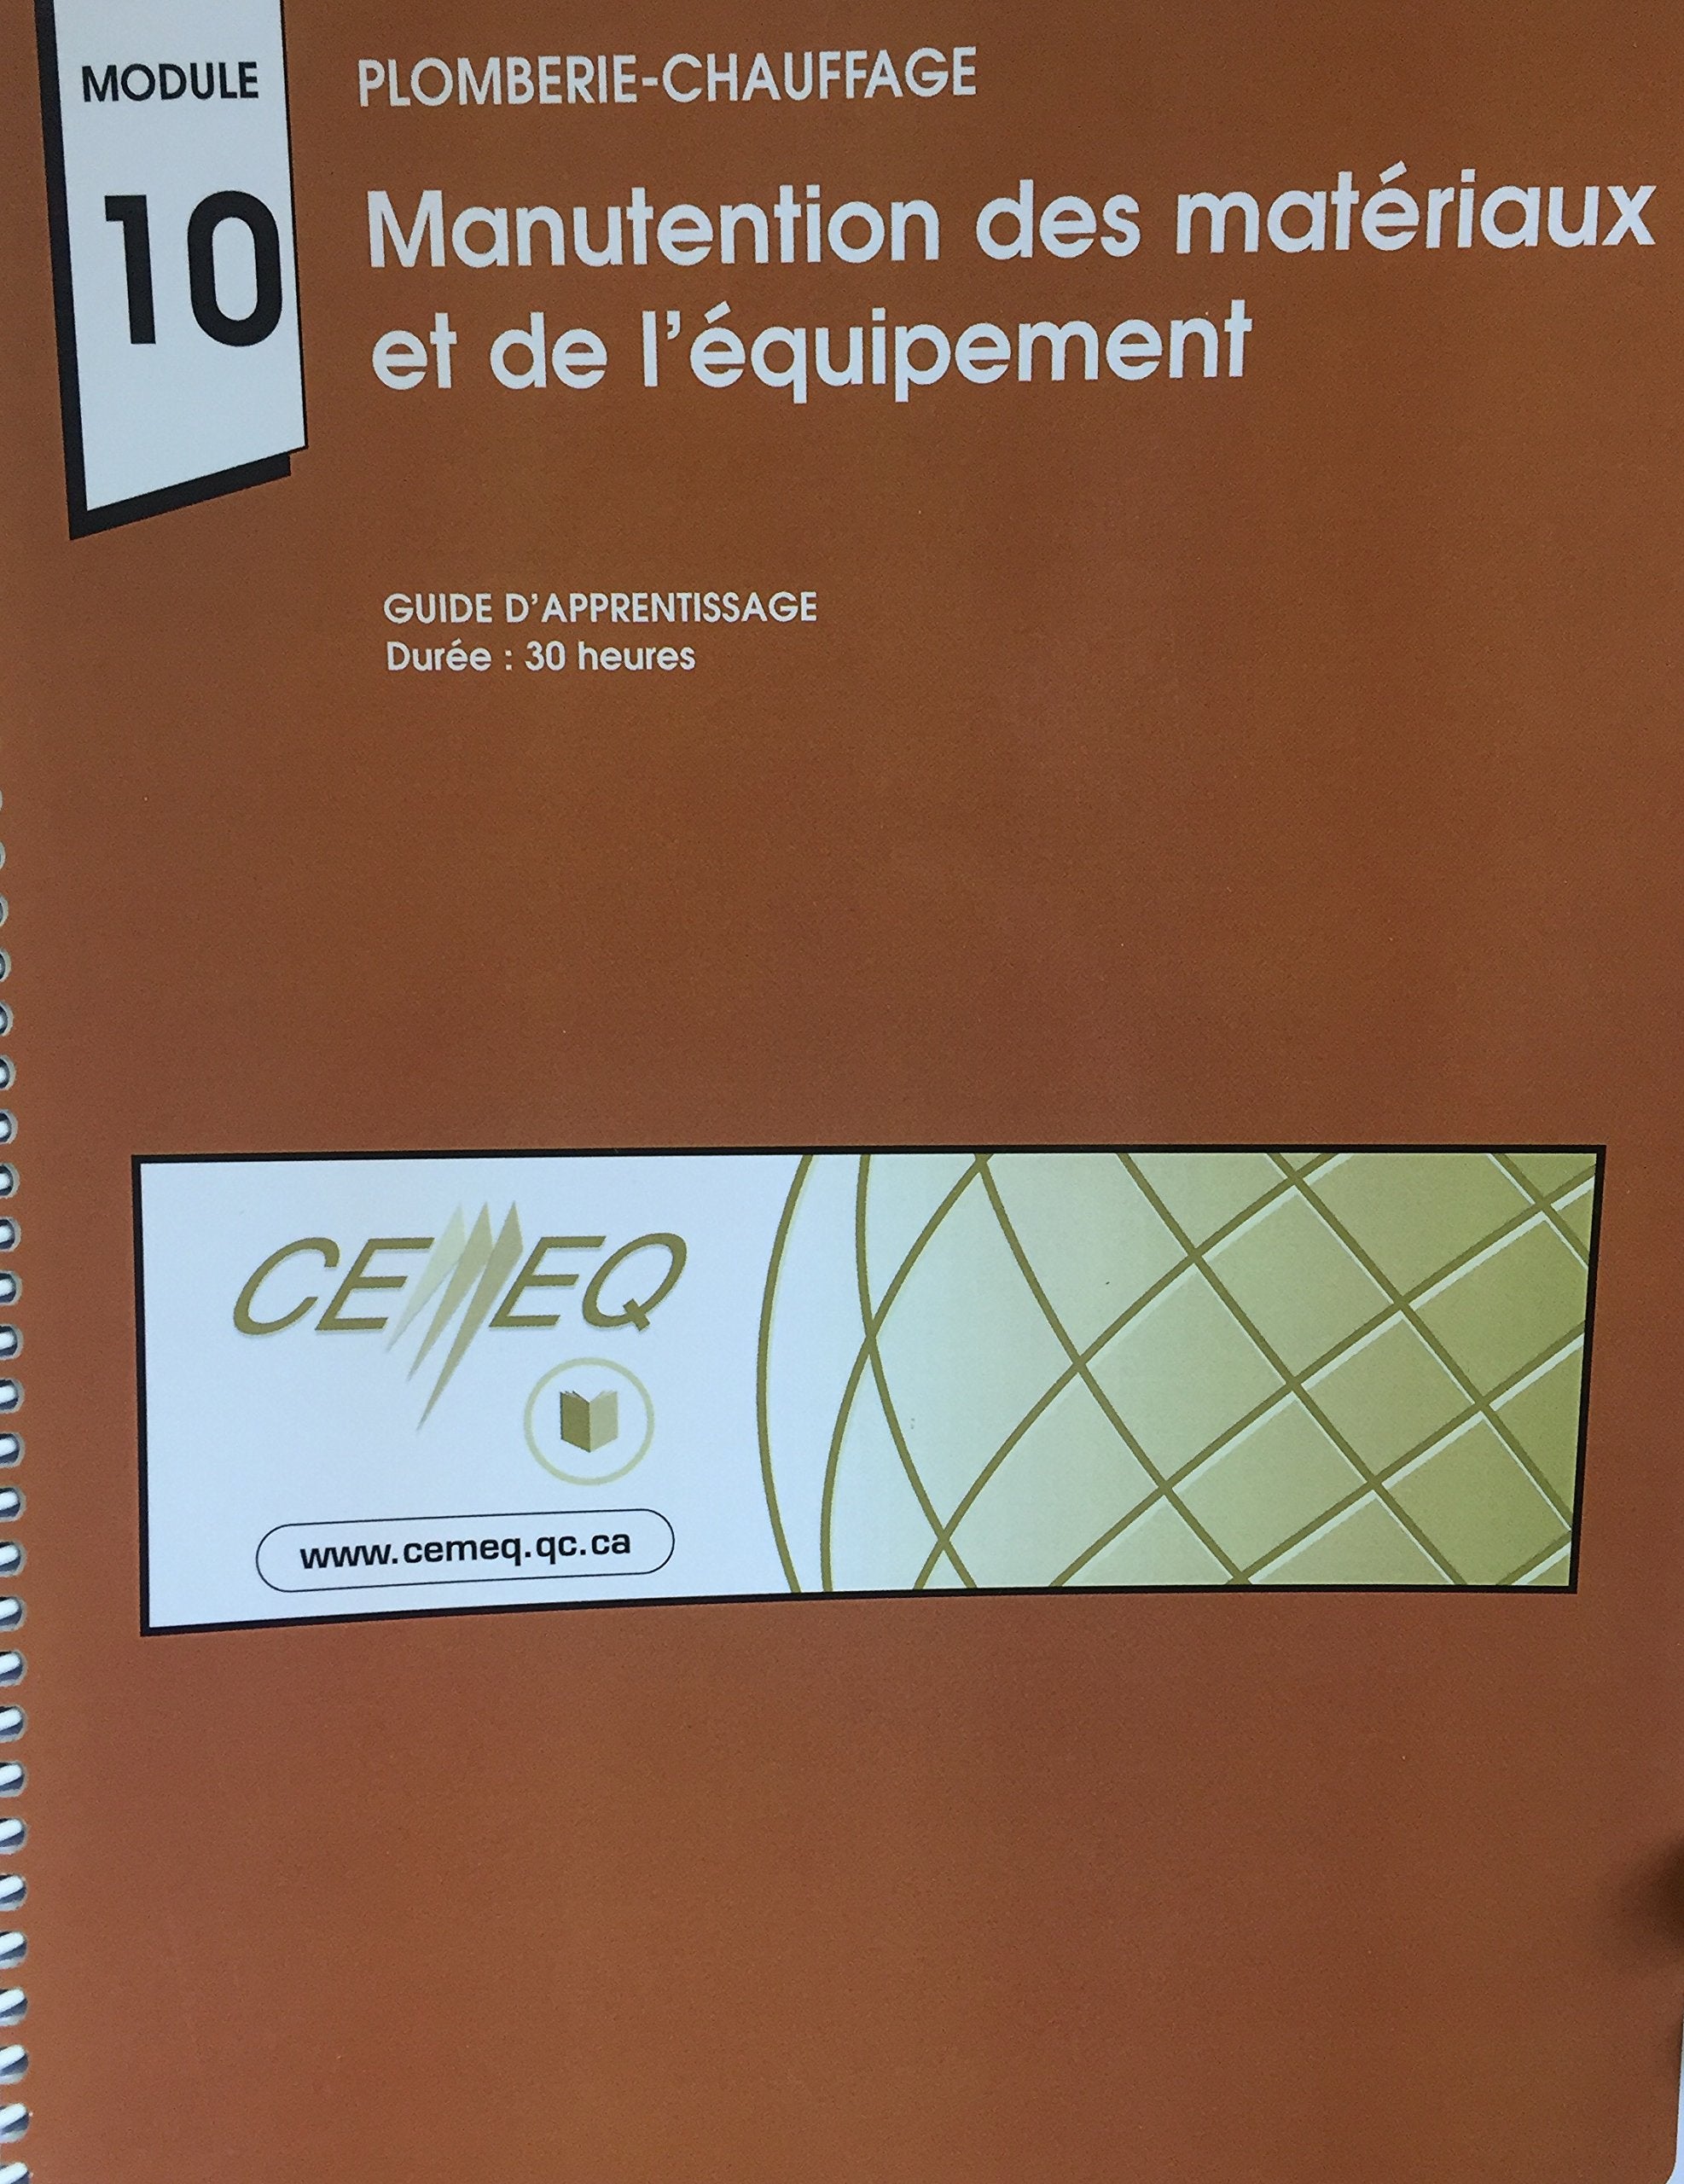 Livre ISBN 2894469144 Plomberie-chauffage Module 10 Manutention des matériaux et de l'équipement (CEMEQ)